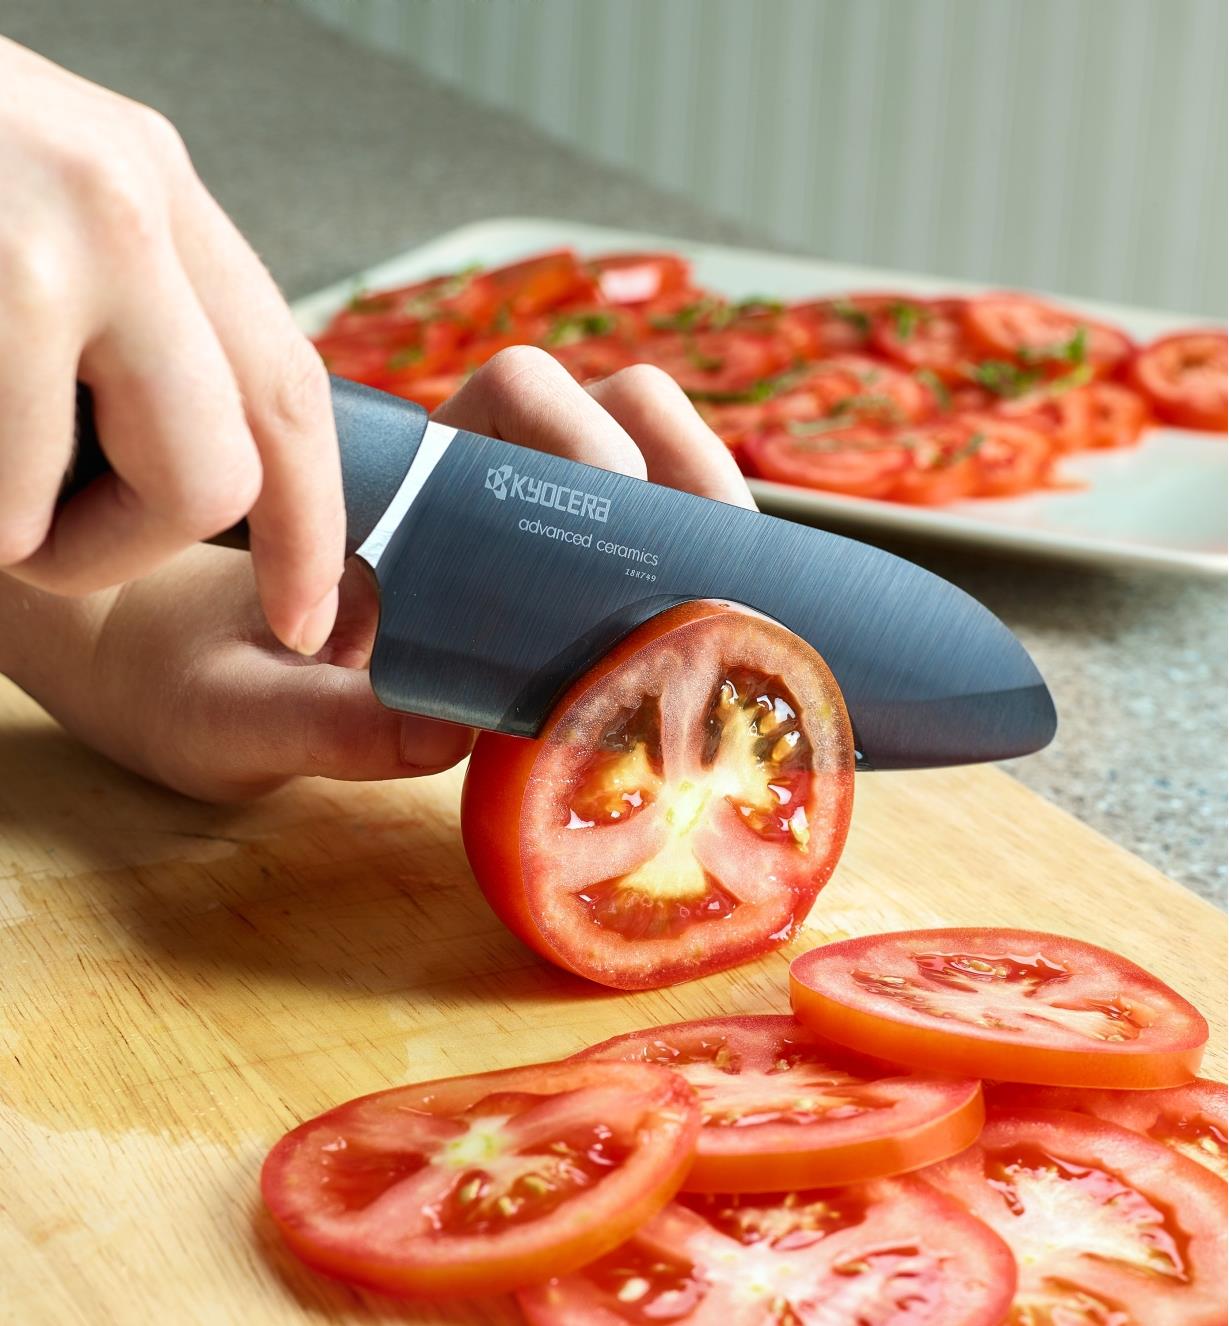 Kyocera Innovation Ceramic Knife Set